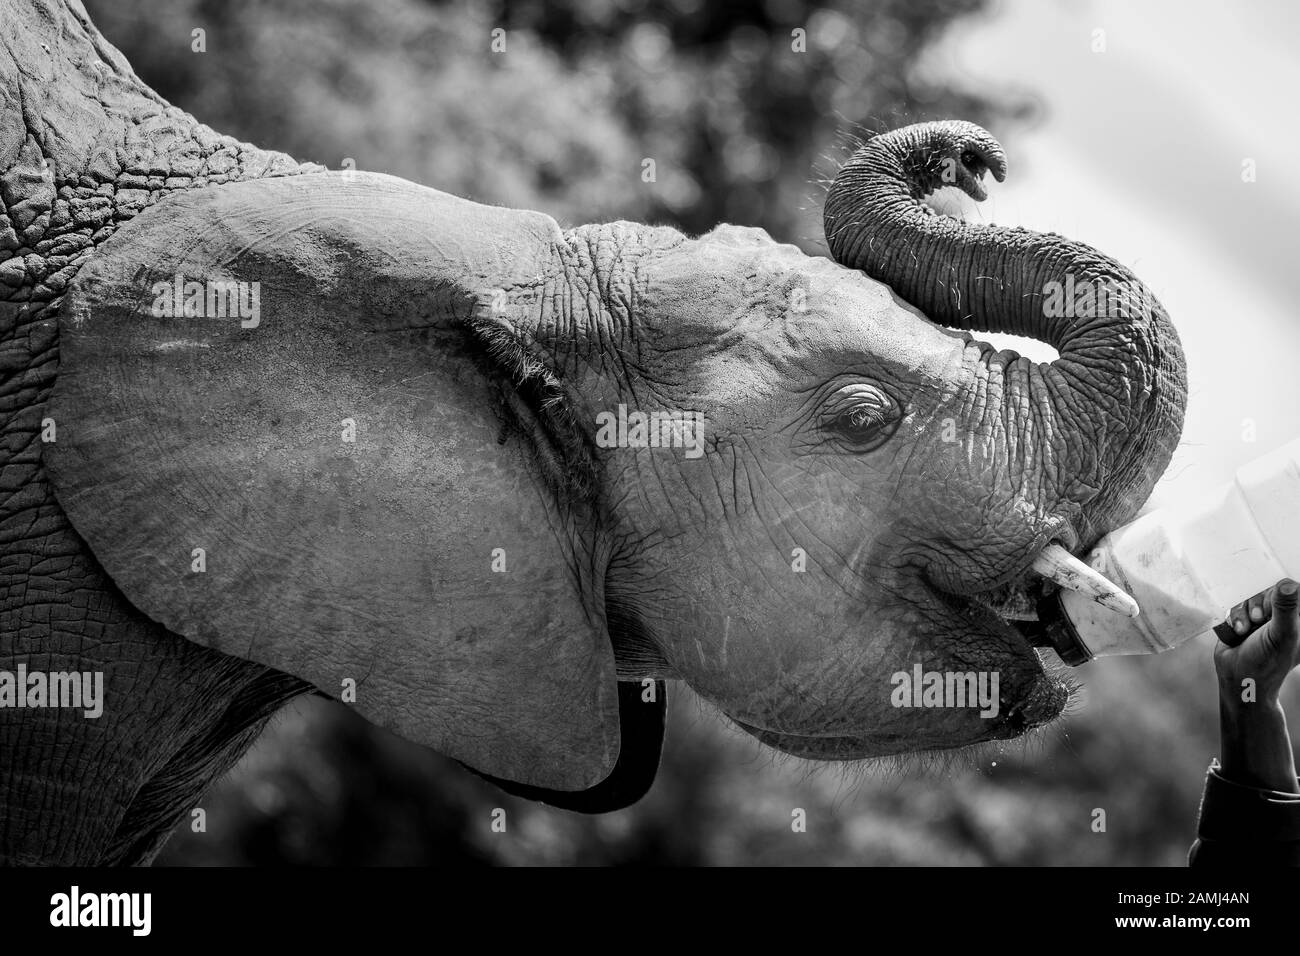 L'Afrique de l'orphelin (Loxodonta Africana) les éléphants au David Sheldrick Wildlife Trust (DSWT) à la périphérie de Nairobi, Kenya. Banque D'Images